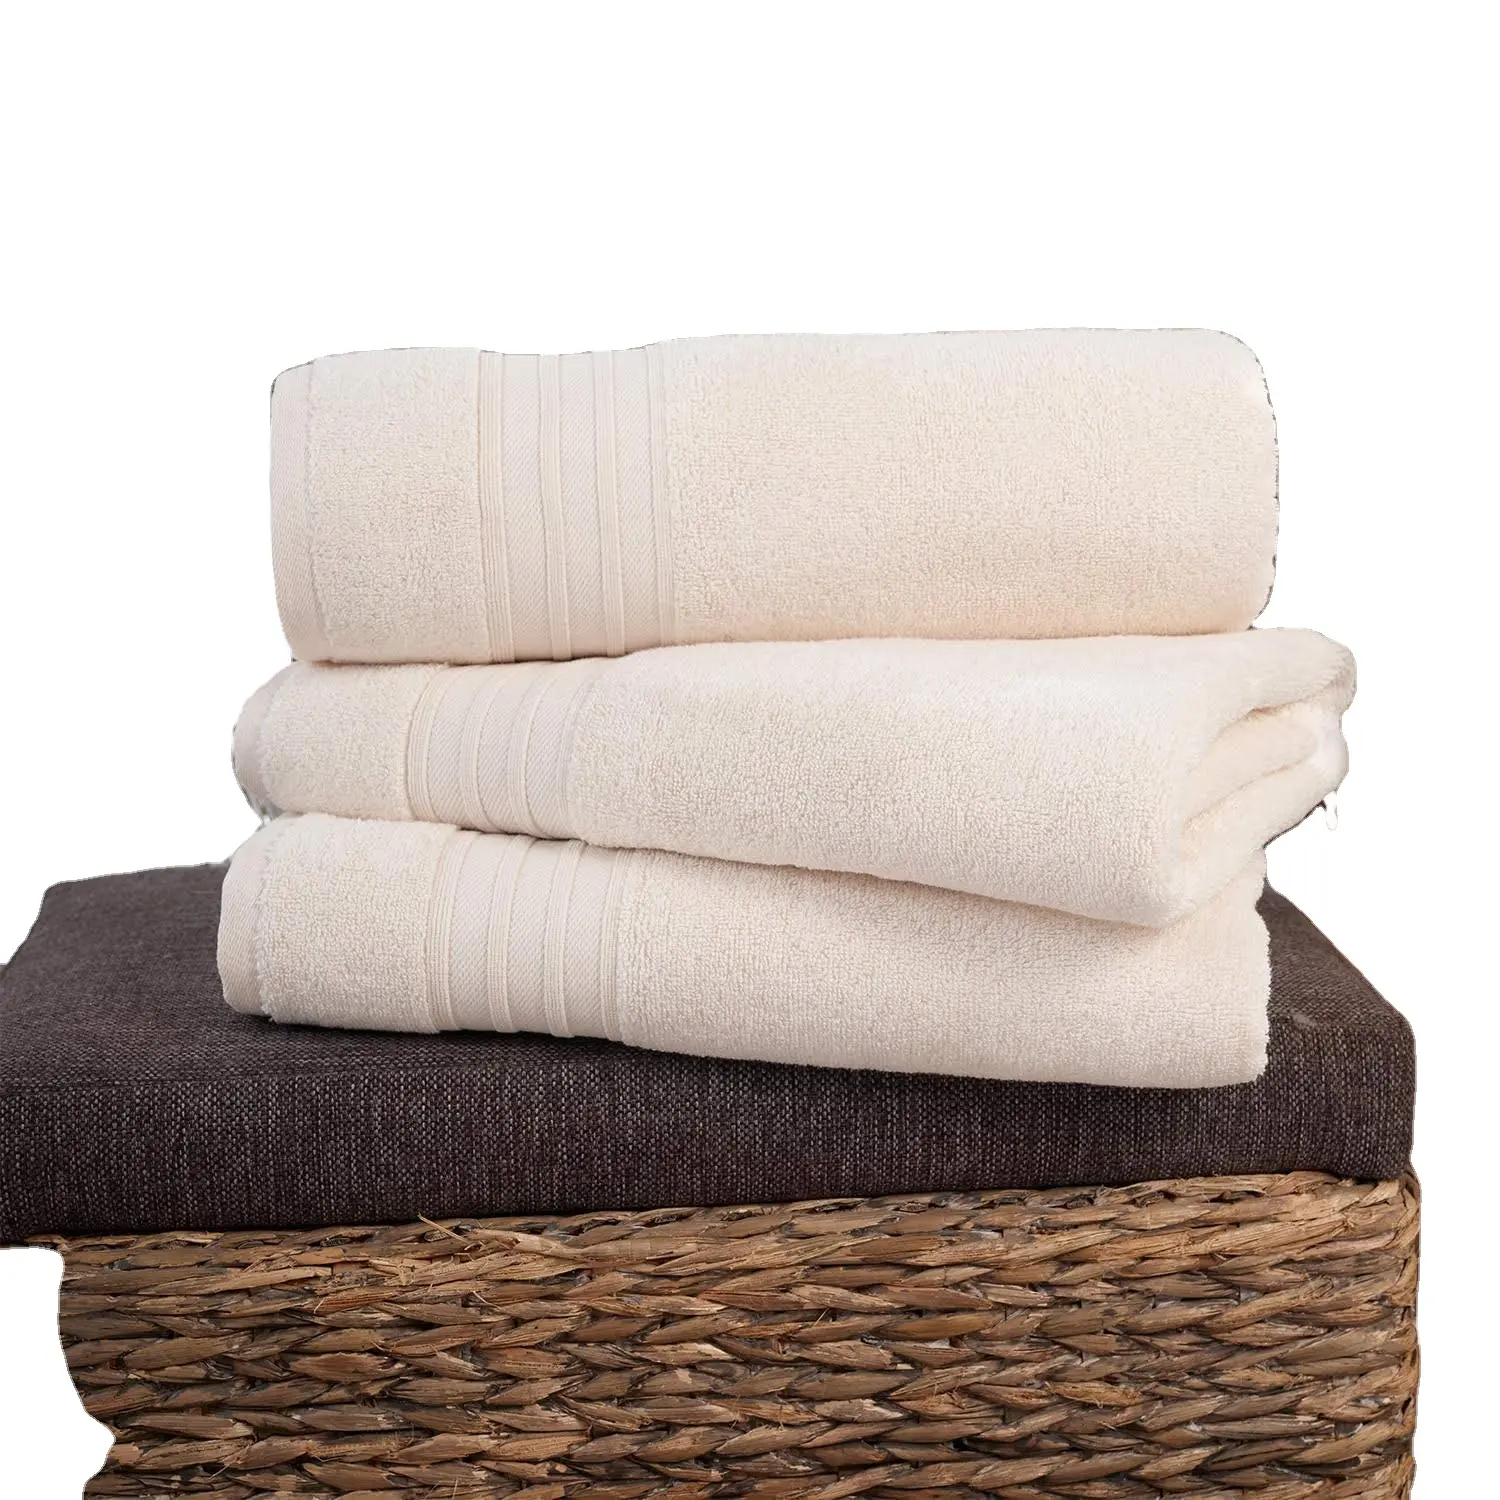 Toalla a granel del fabricante de Guangzhou, sábanas y toallas de hotel personalizadas de algodón blanco, toalla de cara de hotel para sauna